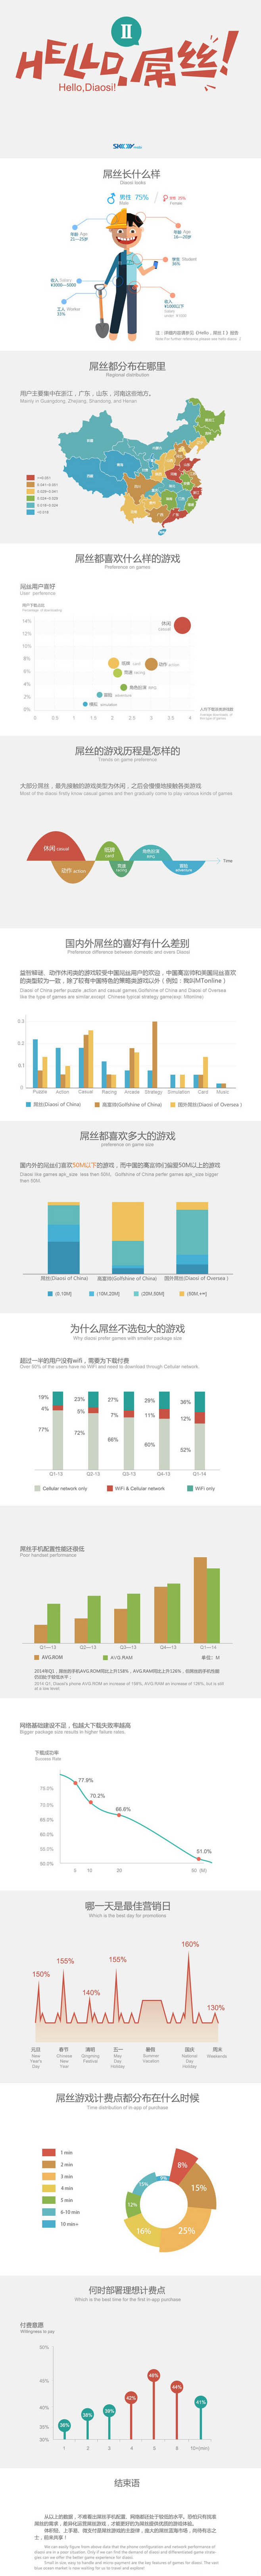 2014年中国屌丝游戏玩家调查报告